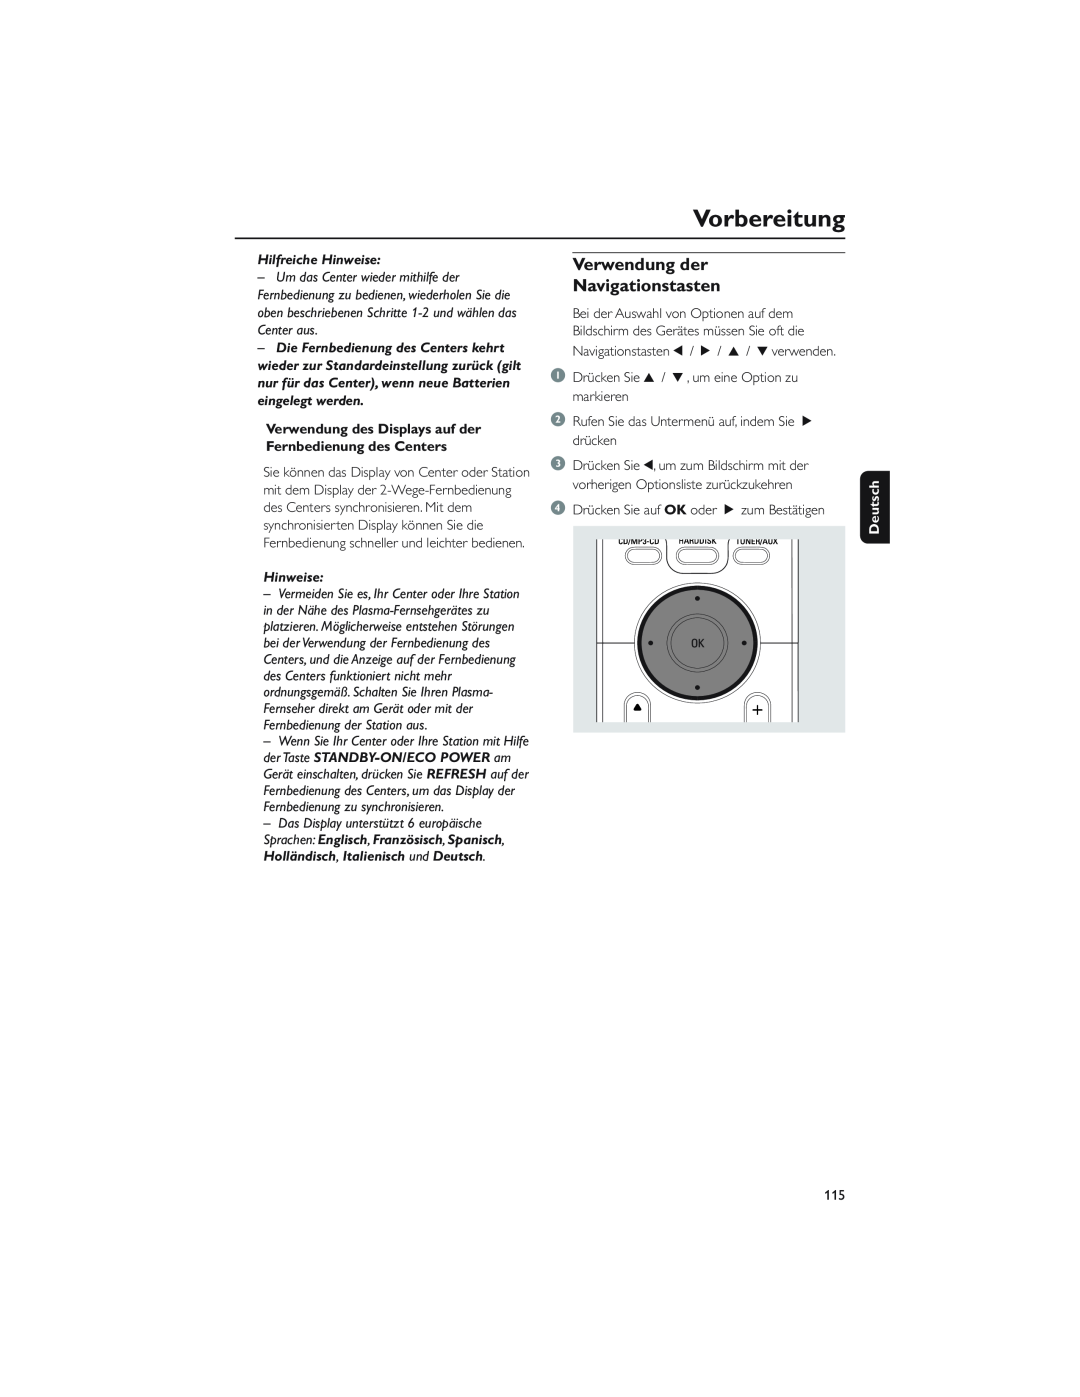 Philips WAC5 user manual Verwendung der Navigationstasten, Vorbereitung, Hilfreiche Hinweise, Deutsch 